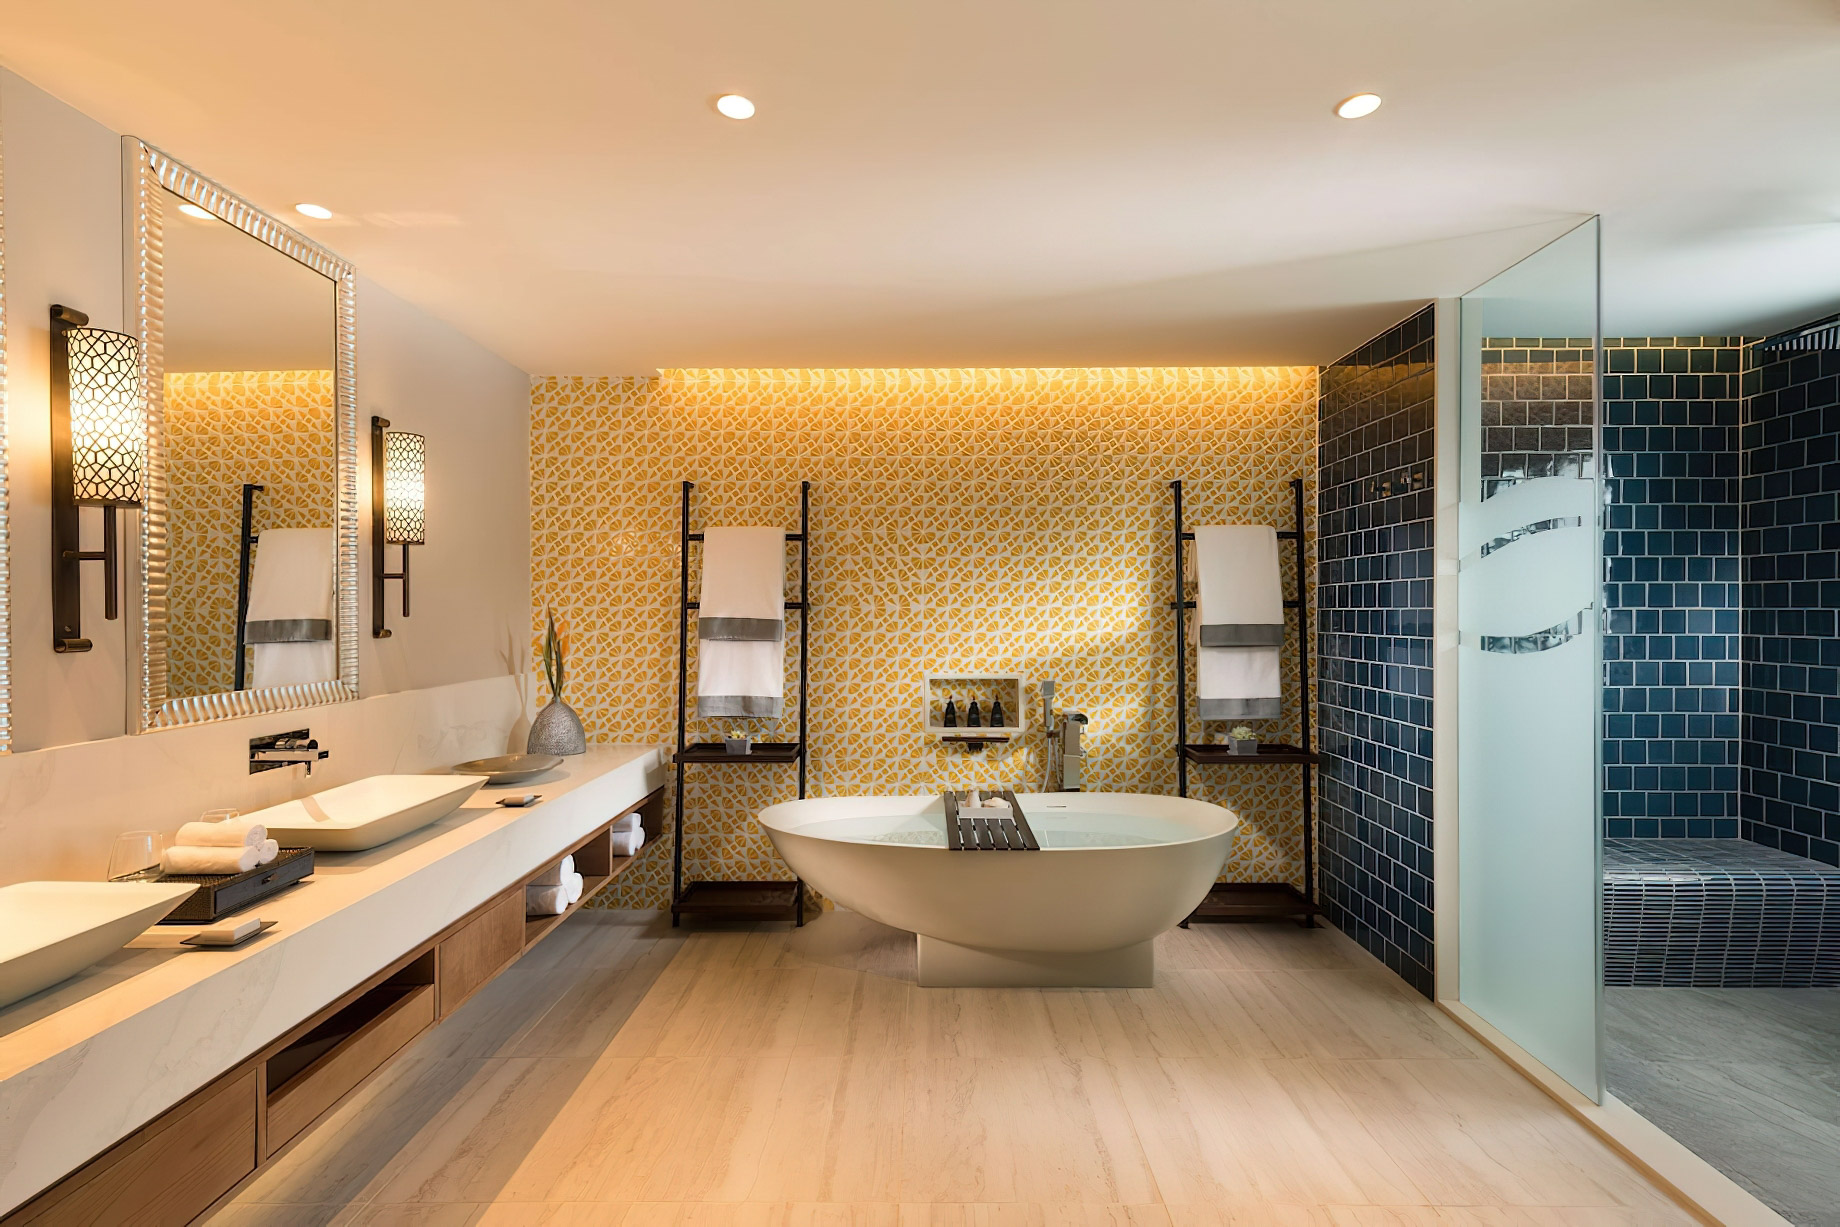 Anantara Iko Mauritius Resort & Villas – Plaine Magnien, Mauritius – Ocean View Suite Bathroom